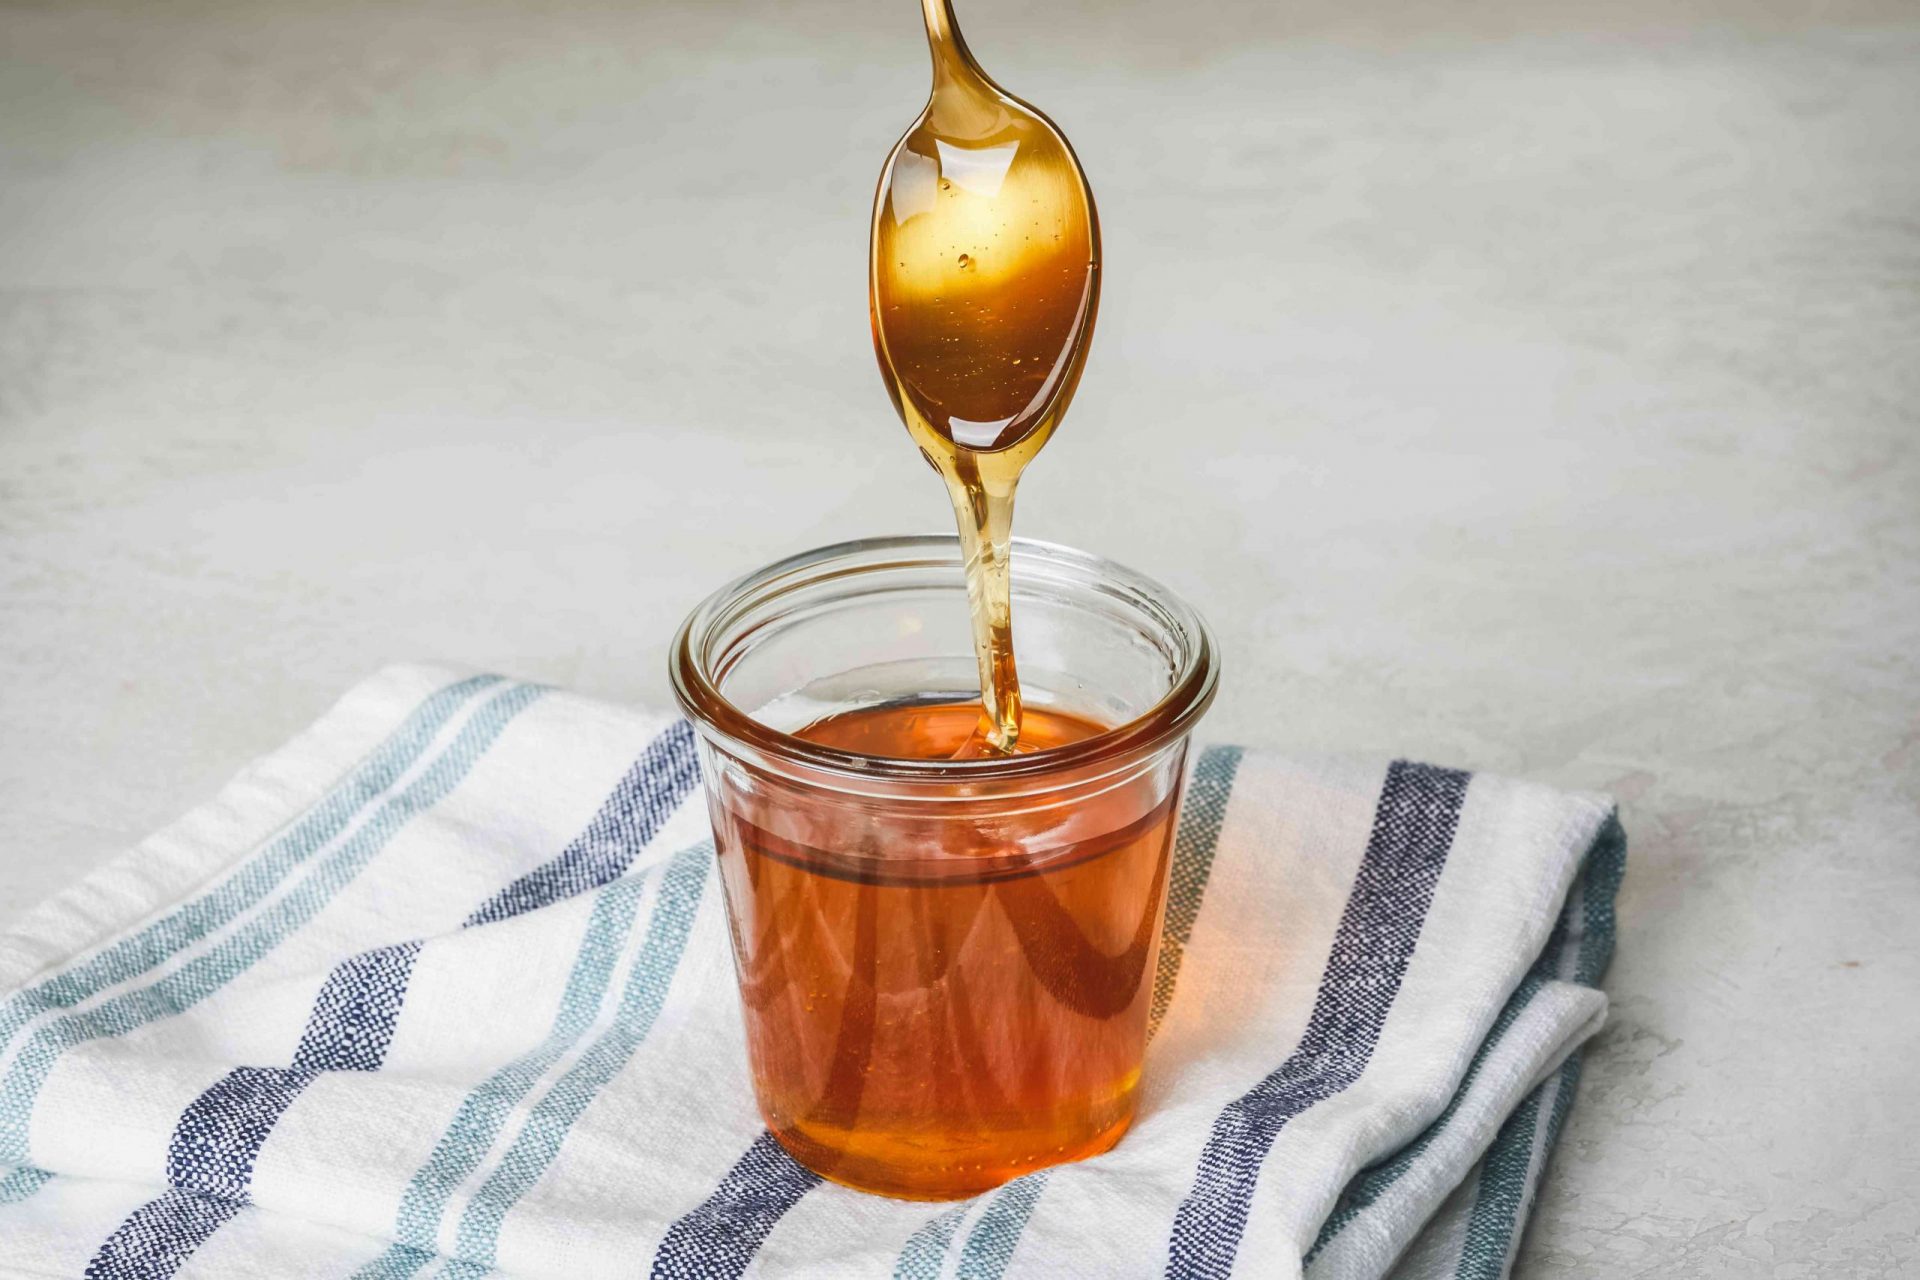 La cuchara dorada sumergida en un tarro de miel gotea al sacarla